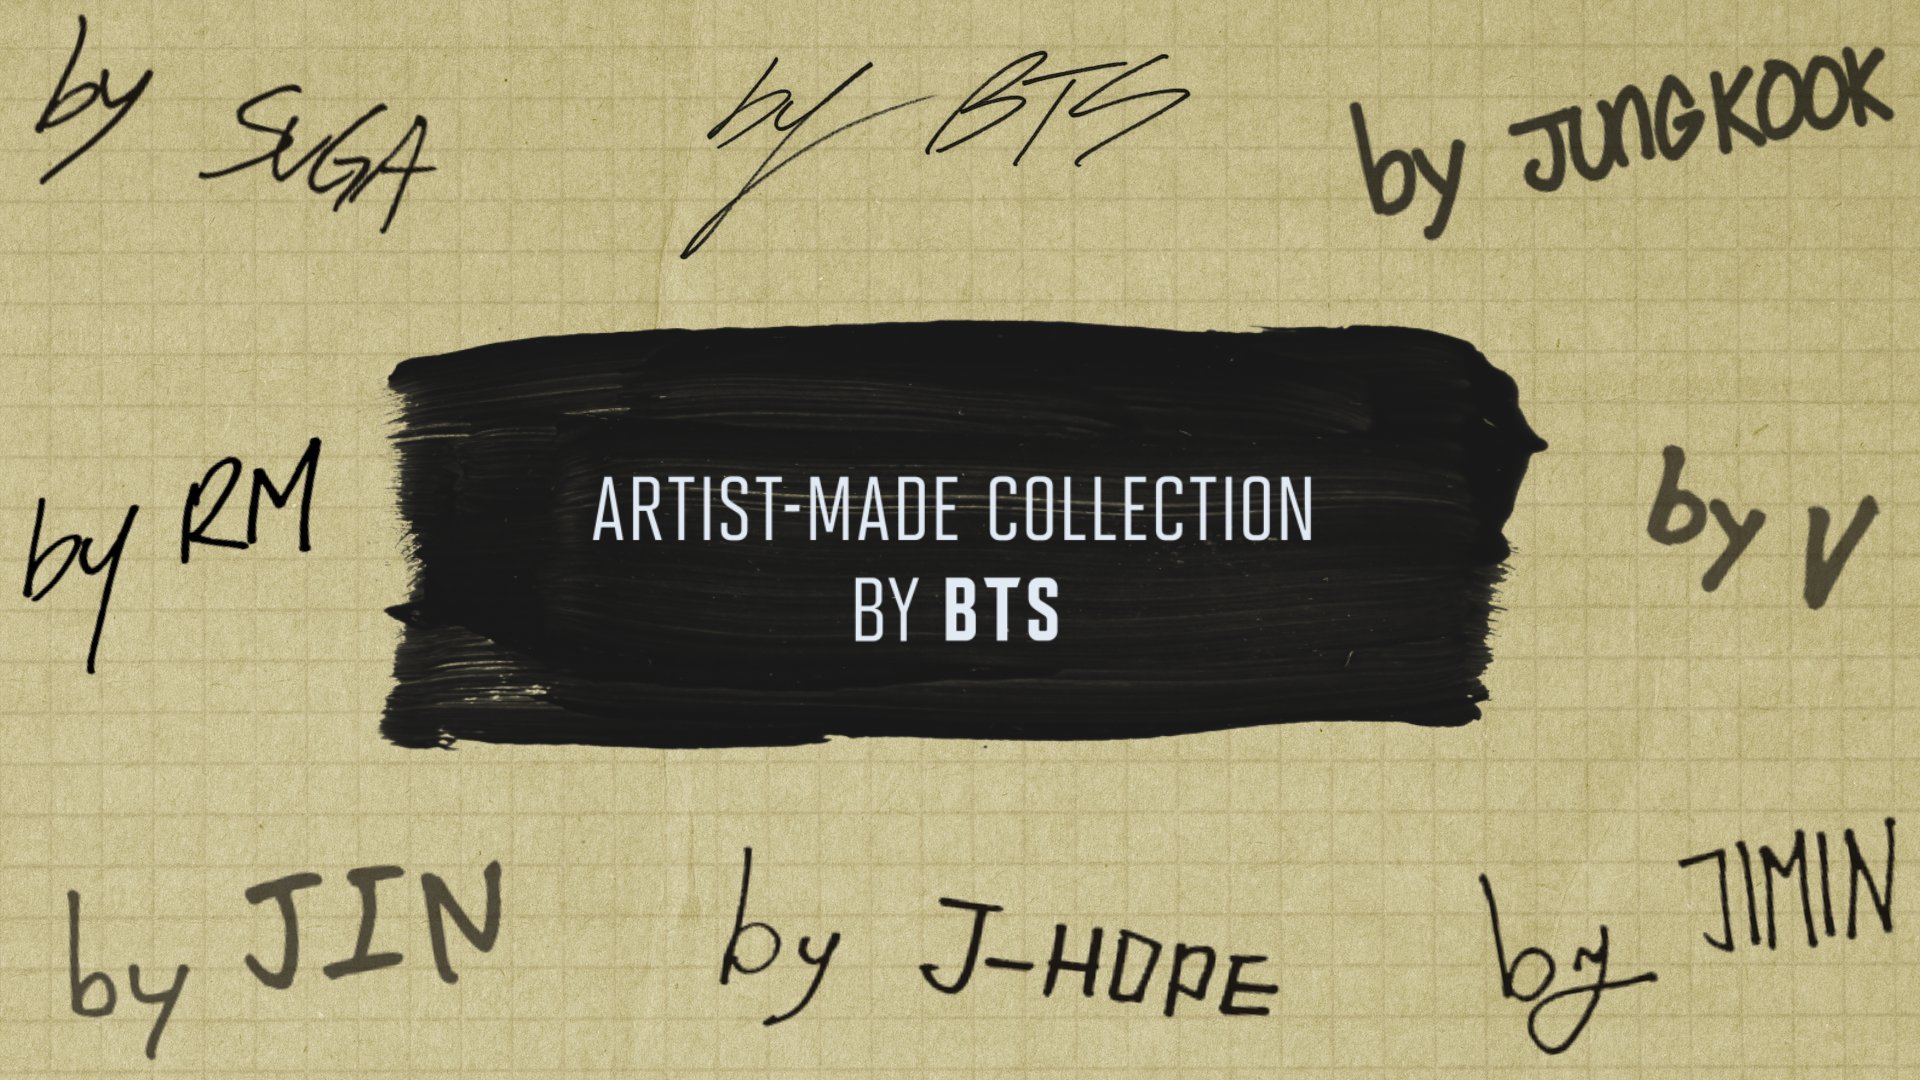 BTS j-hope Side by Side Mini Bag K-POP BTS ARTIST-MADE COLLECTION